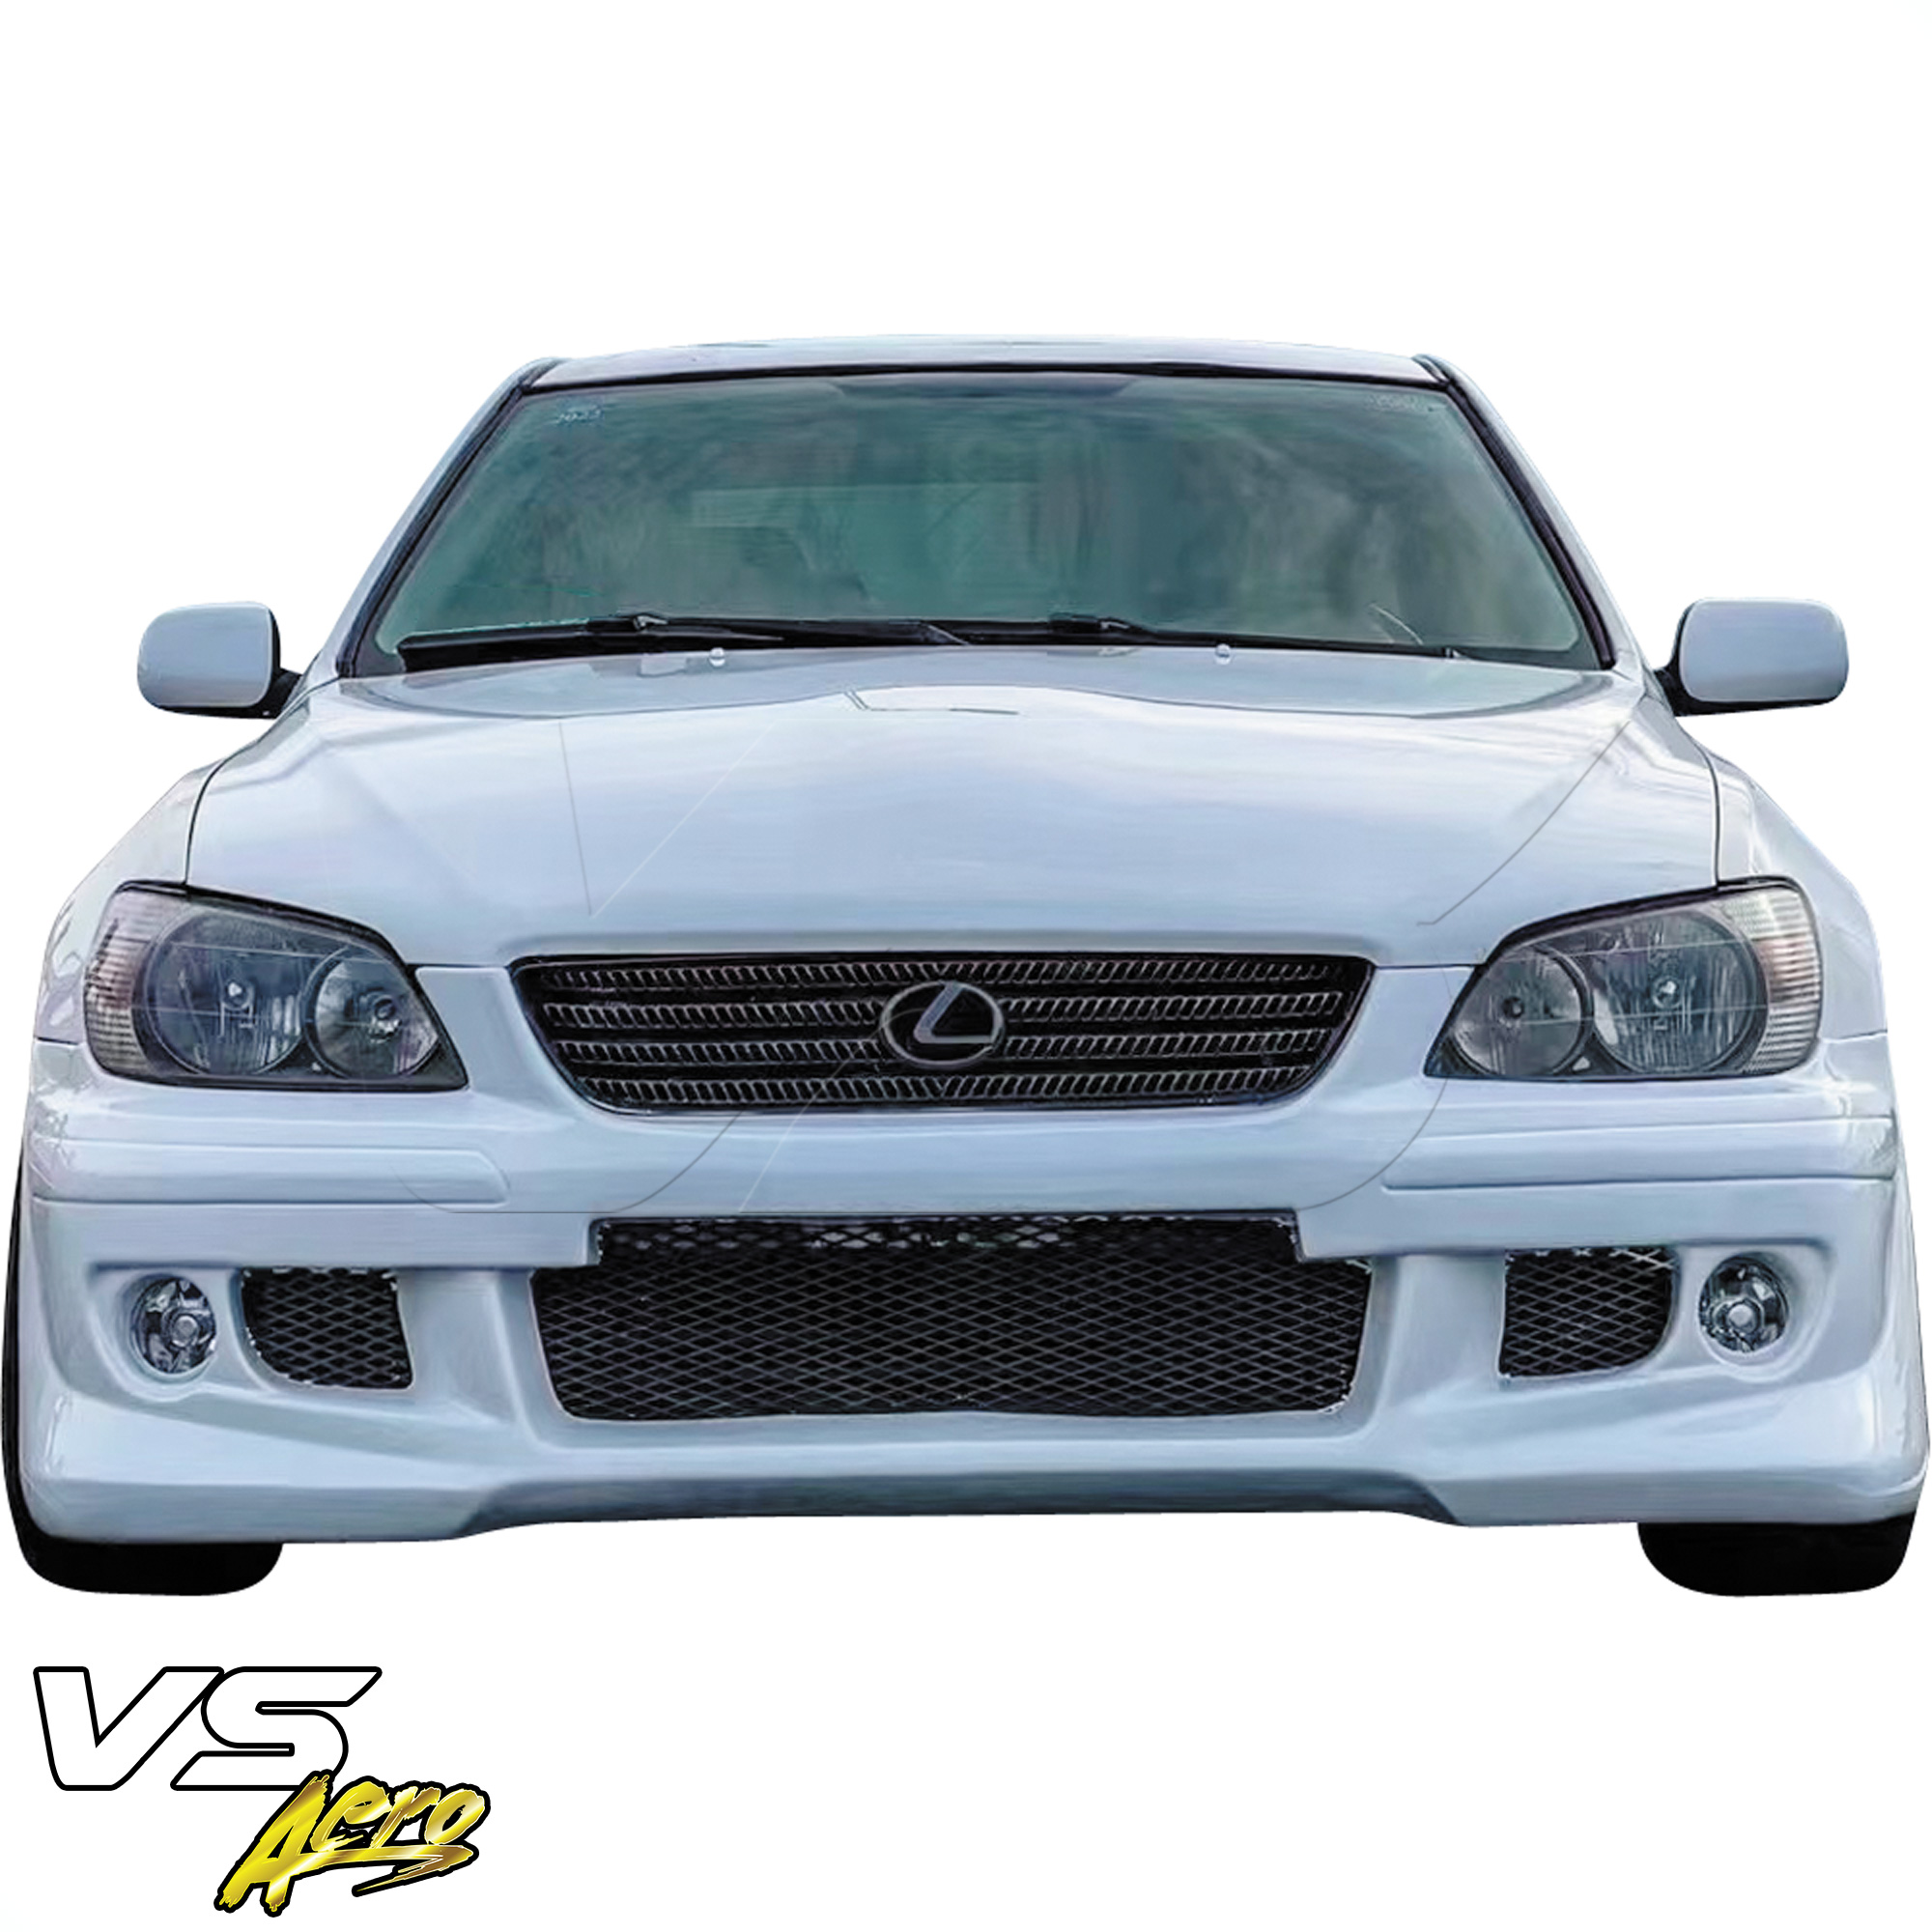 VSaero FRP HKES Front Bumper > Lexus IS300 SXE10 2001-2005 - Image 4